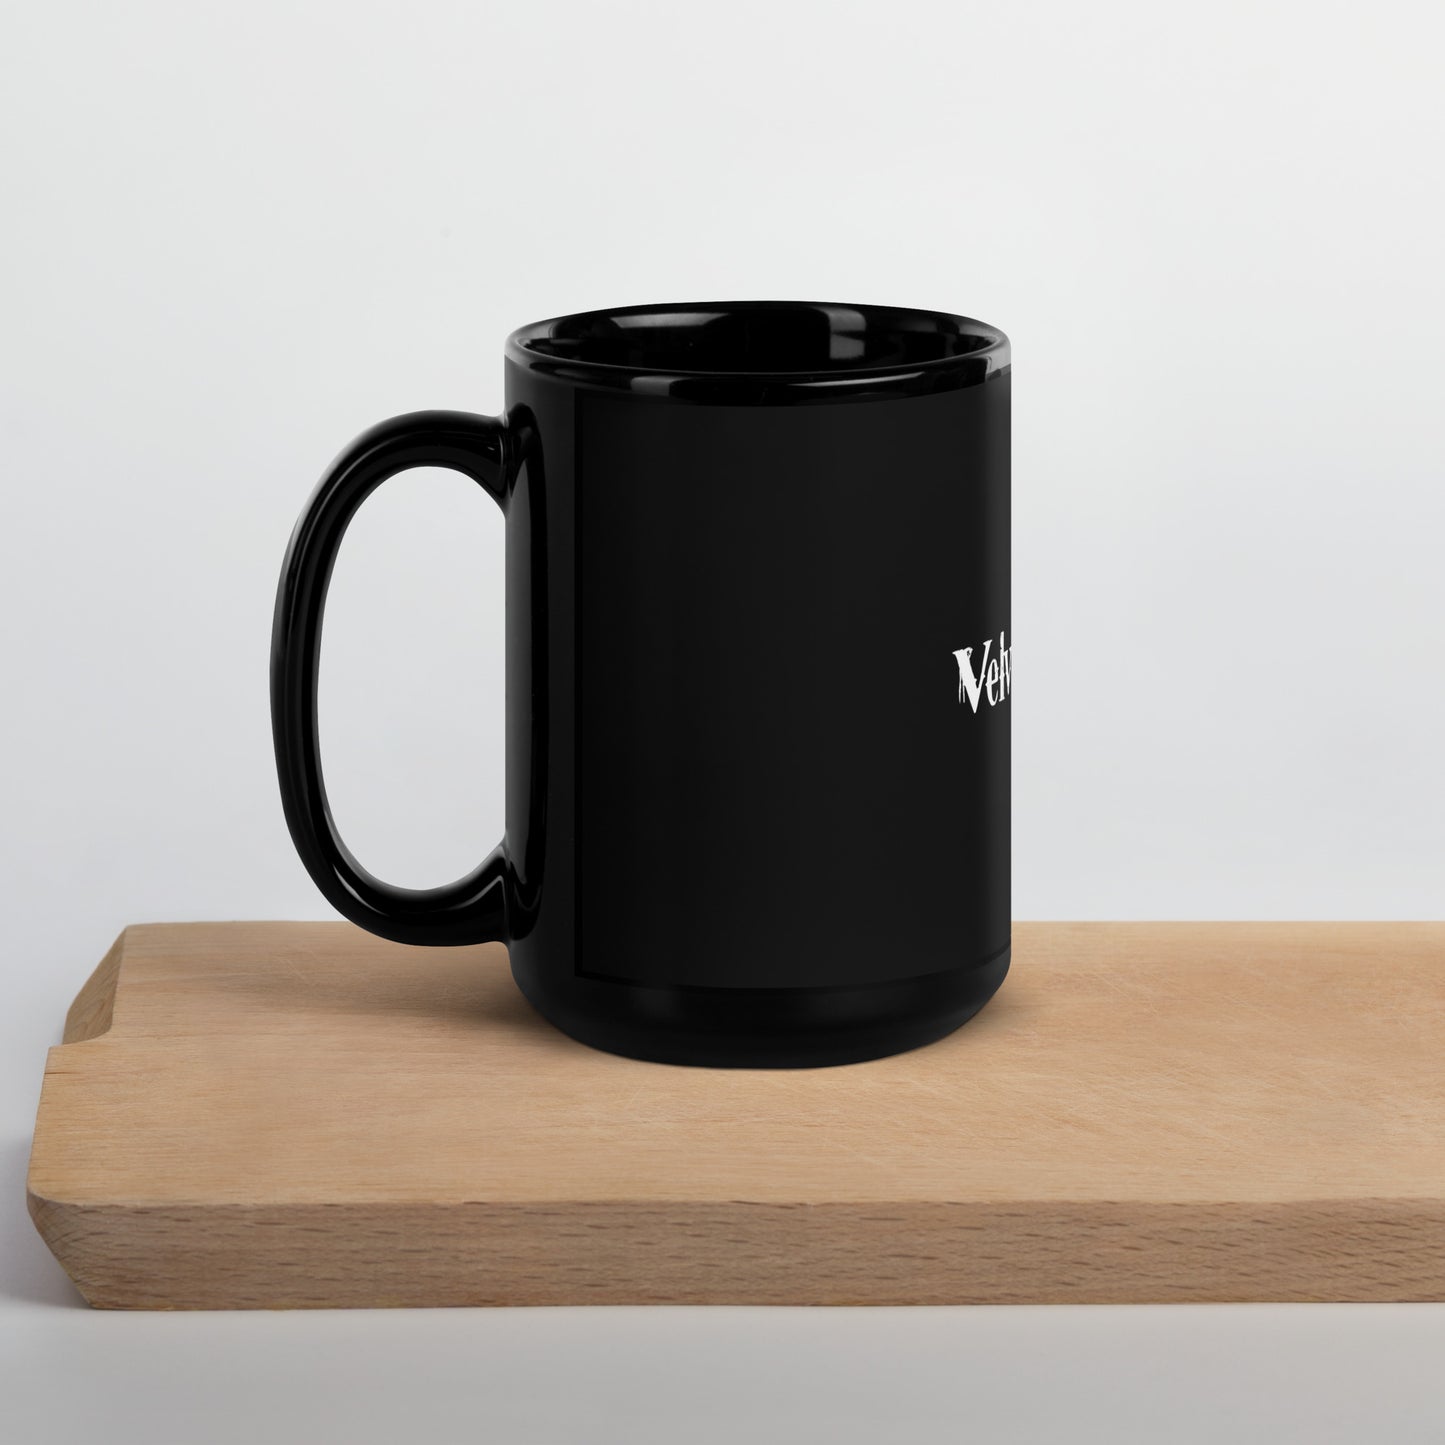 Velvet Hammer Black Glossy Mug